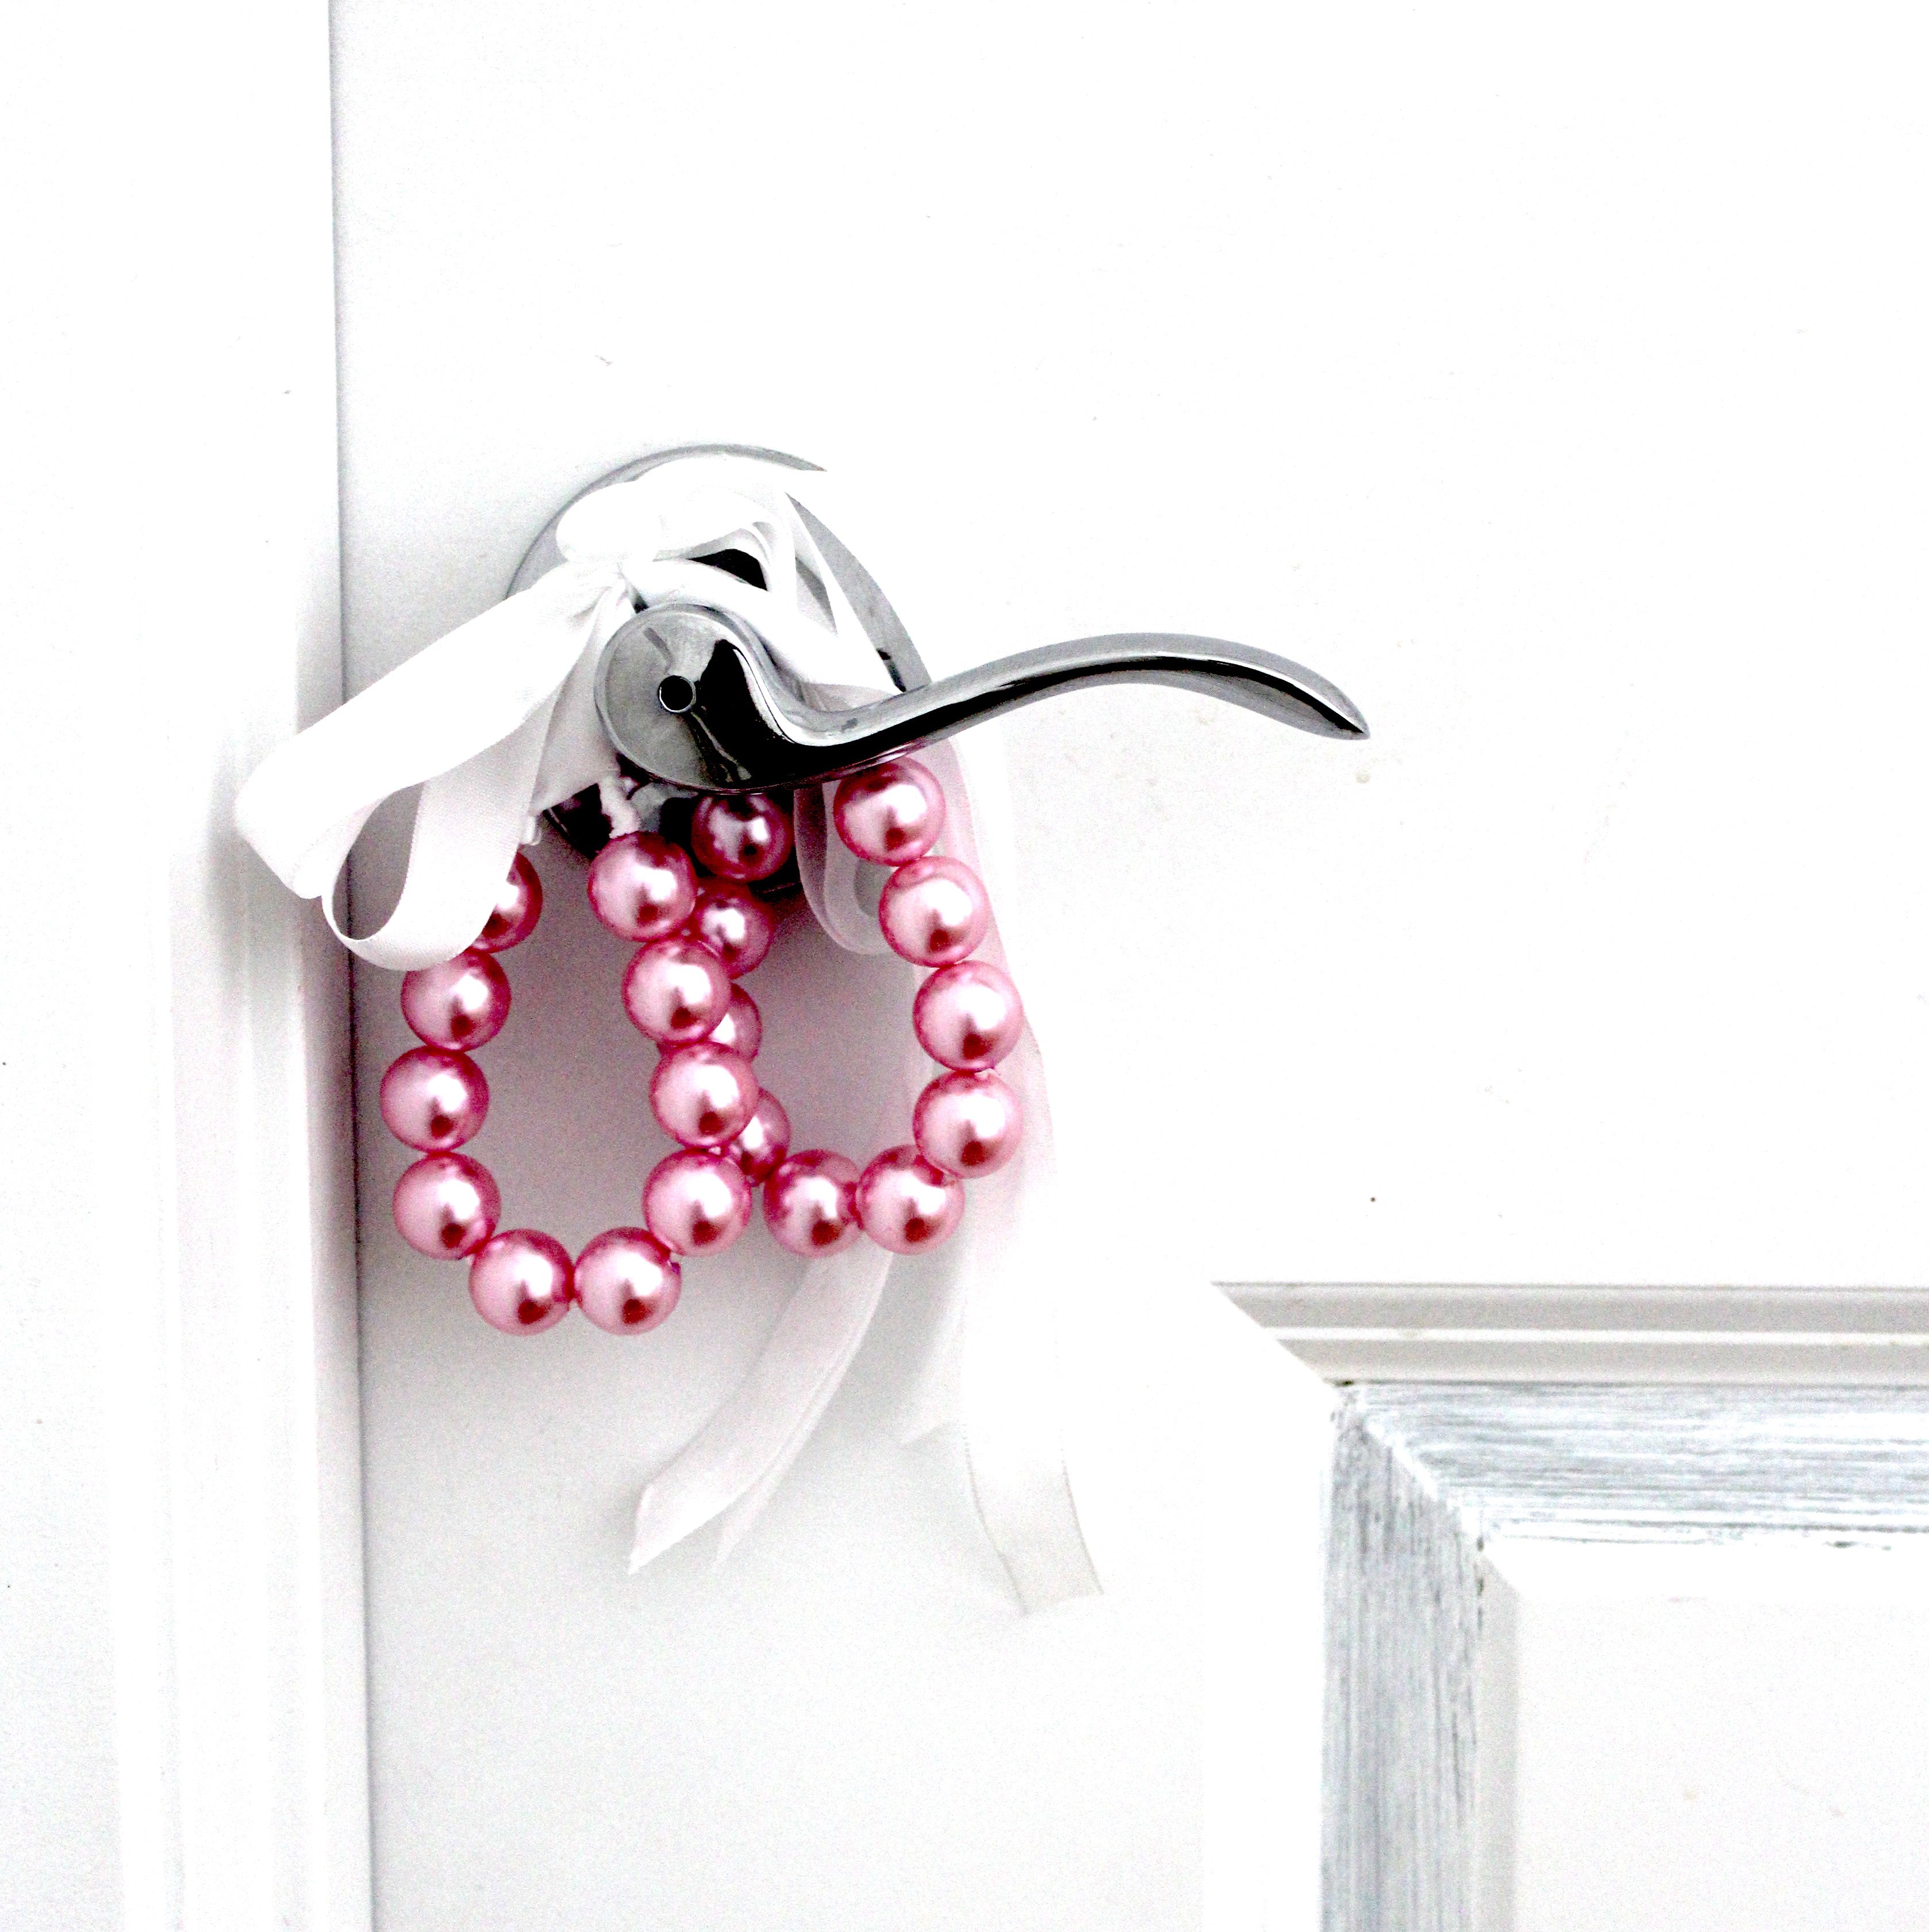 Faux Pink Pearl Handcuffs on DoorKnob